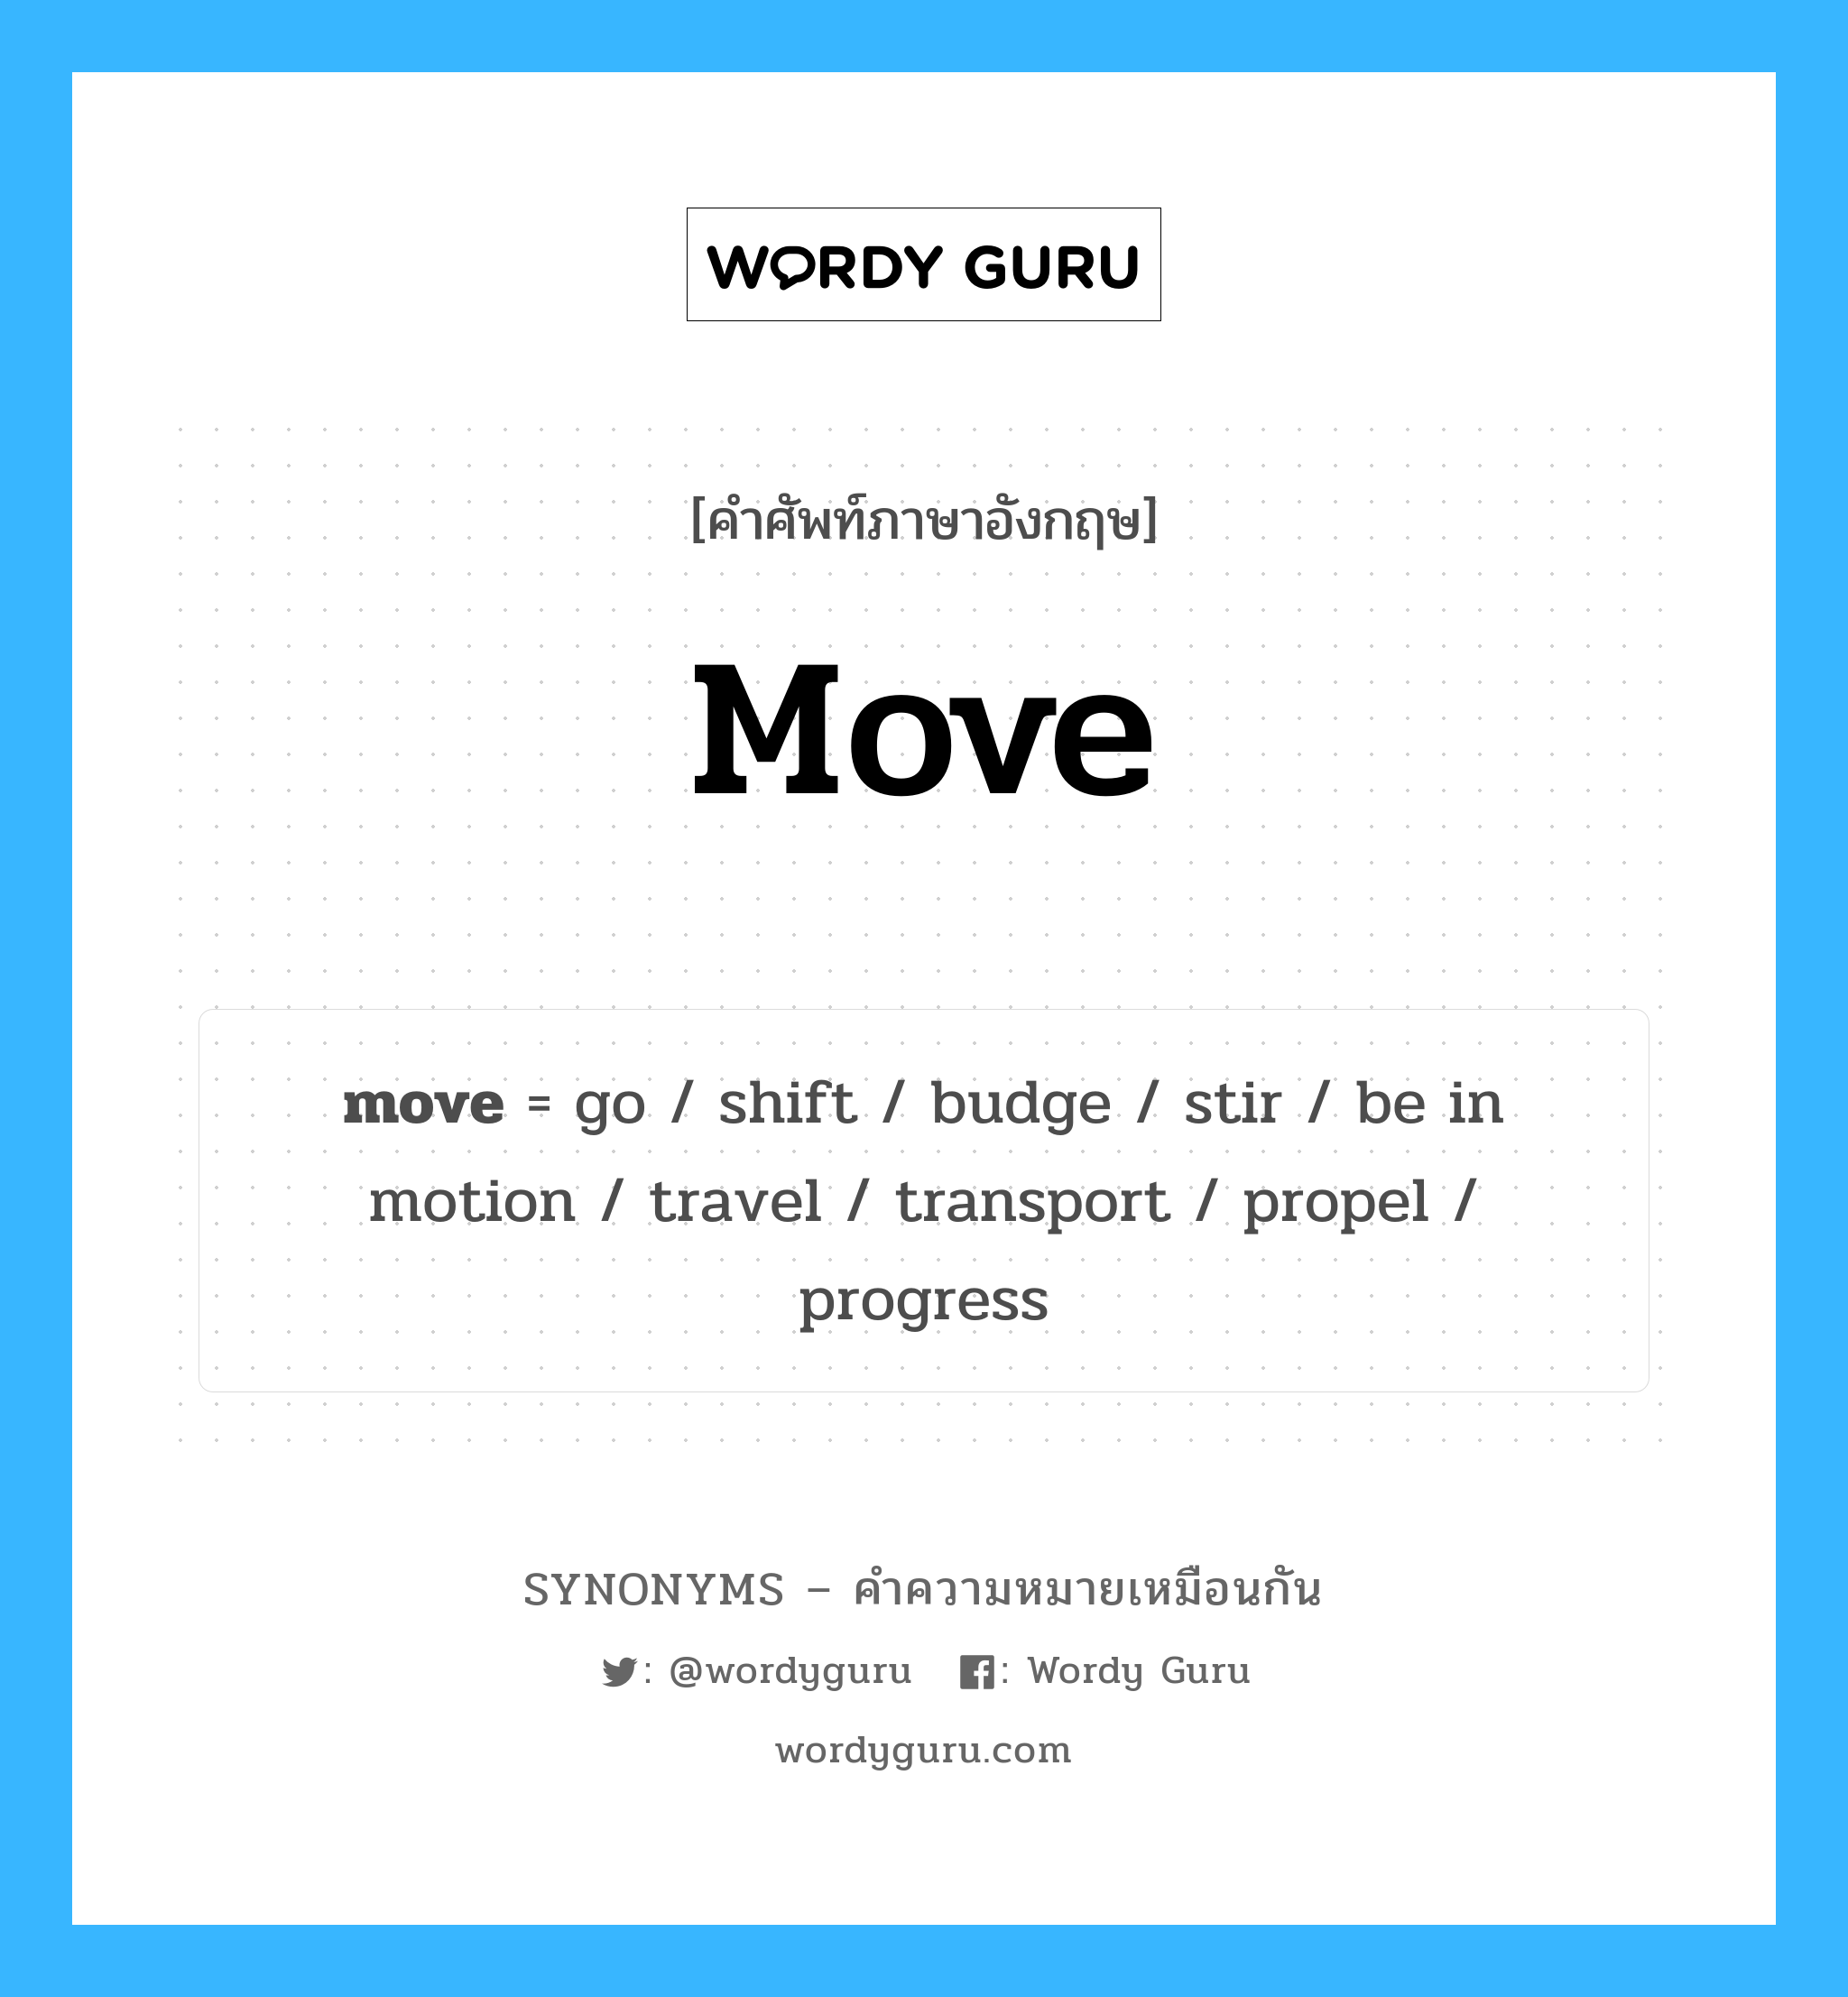 move เป็นหนึ่งใน go และมีคำอื่น ๆ อีกดังนี้, คำศัพท์ภาษาอังกฤษ move ความหมายคล้ายกันกับ go แปลว่า ไป หมวด go